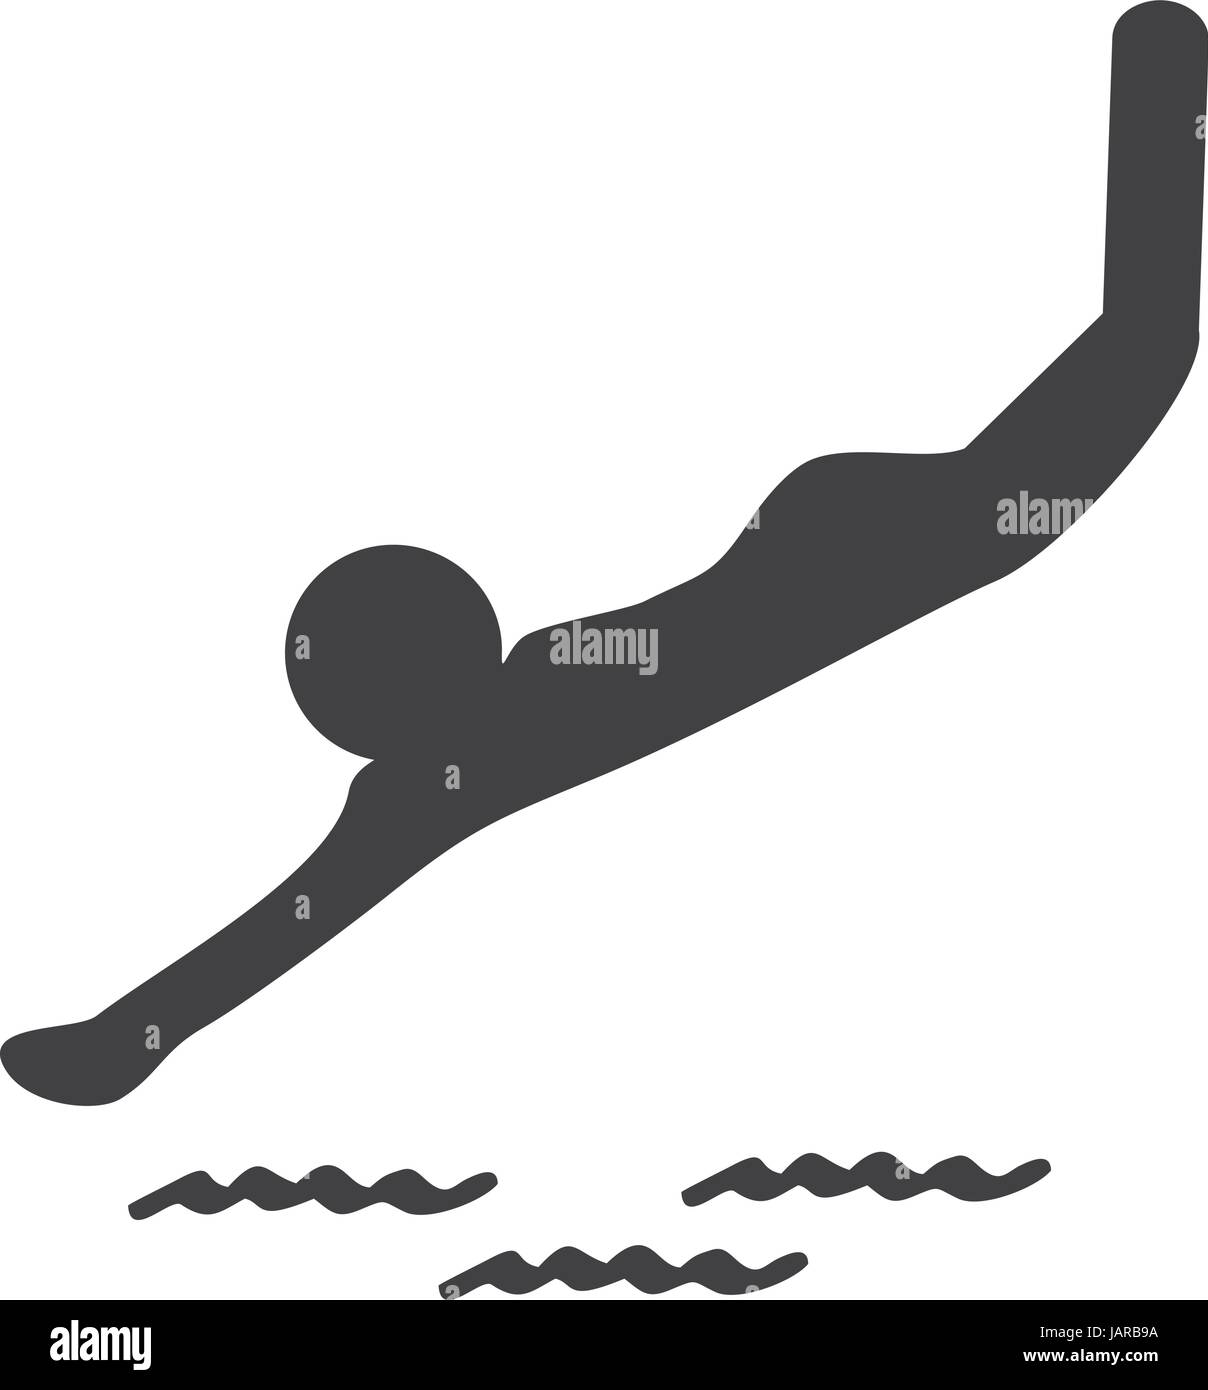 Einfach tauchen Icon-Vektor mit Mann ins Wasser tauchen Stock Vektor